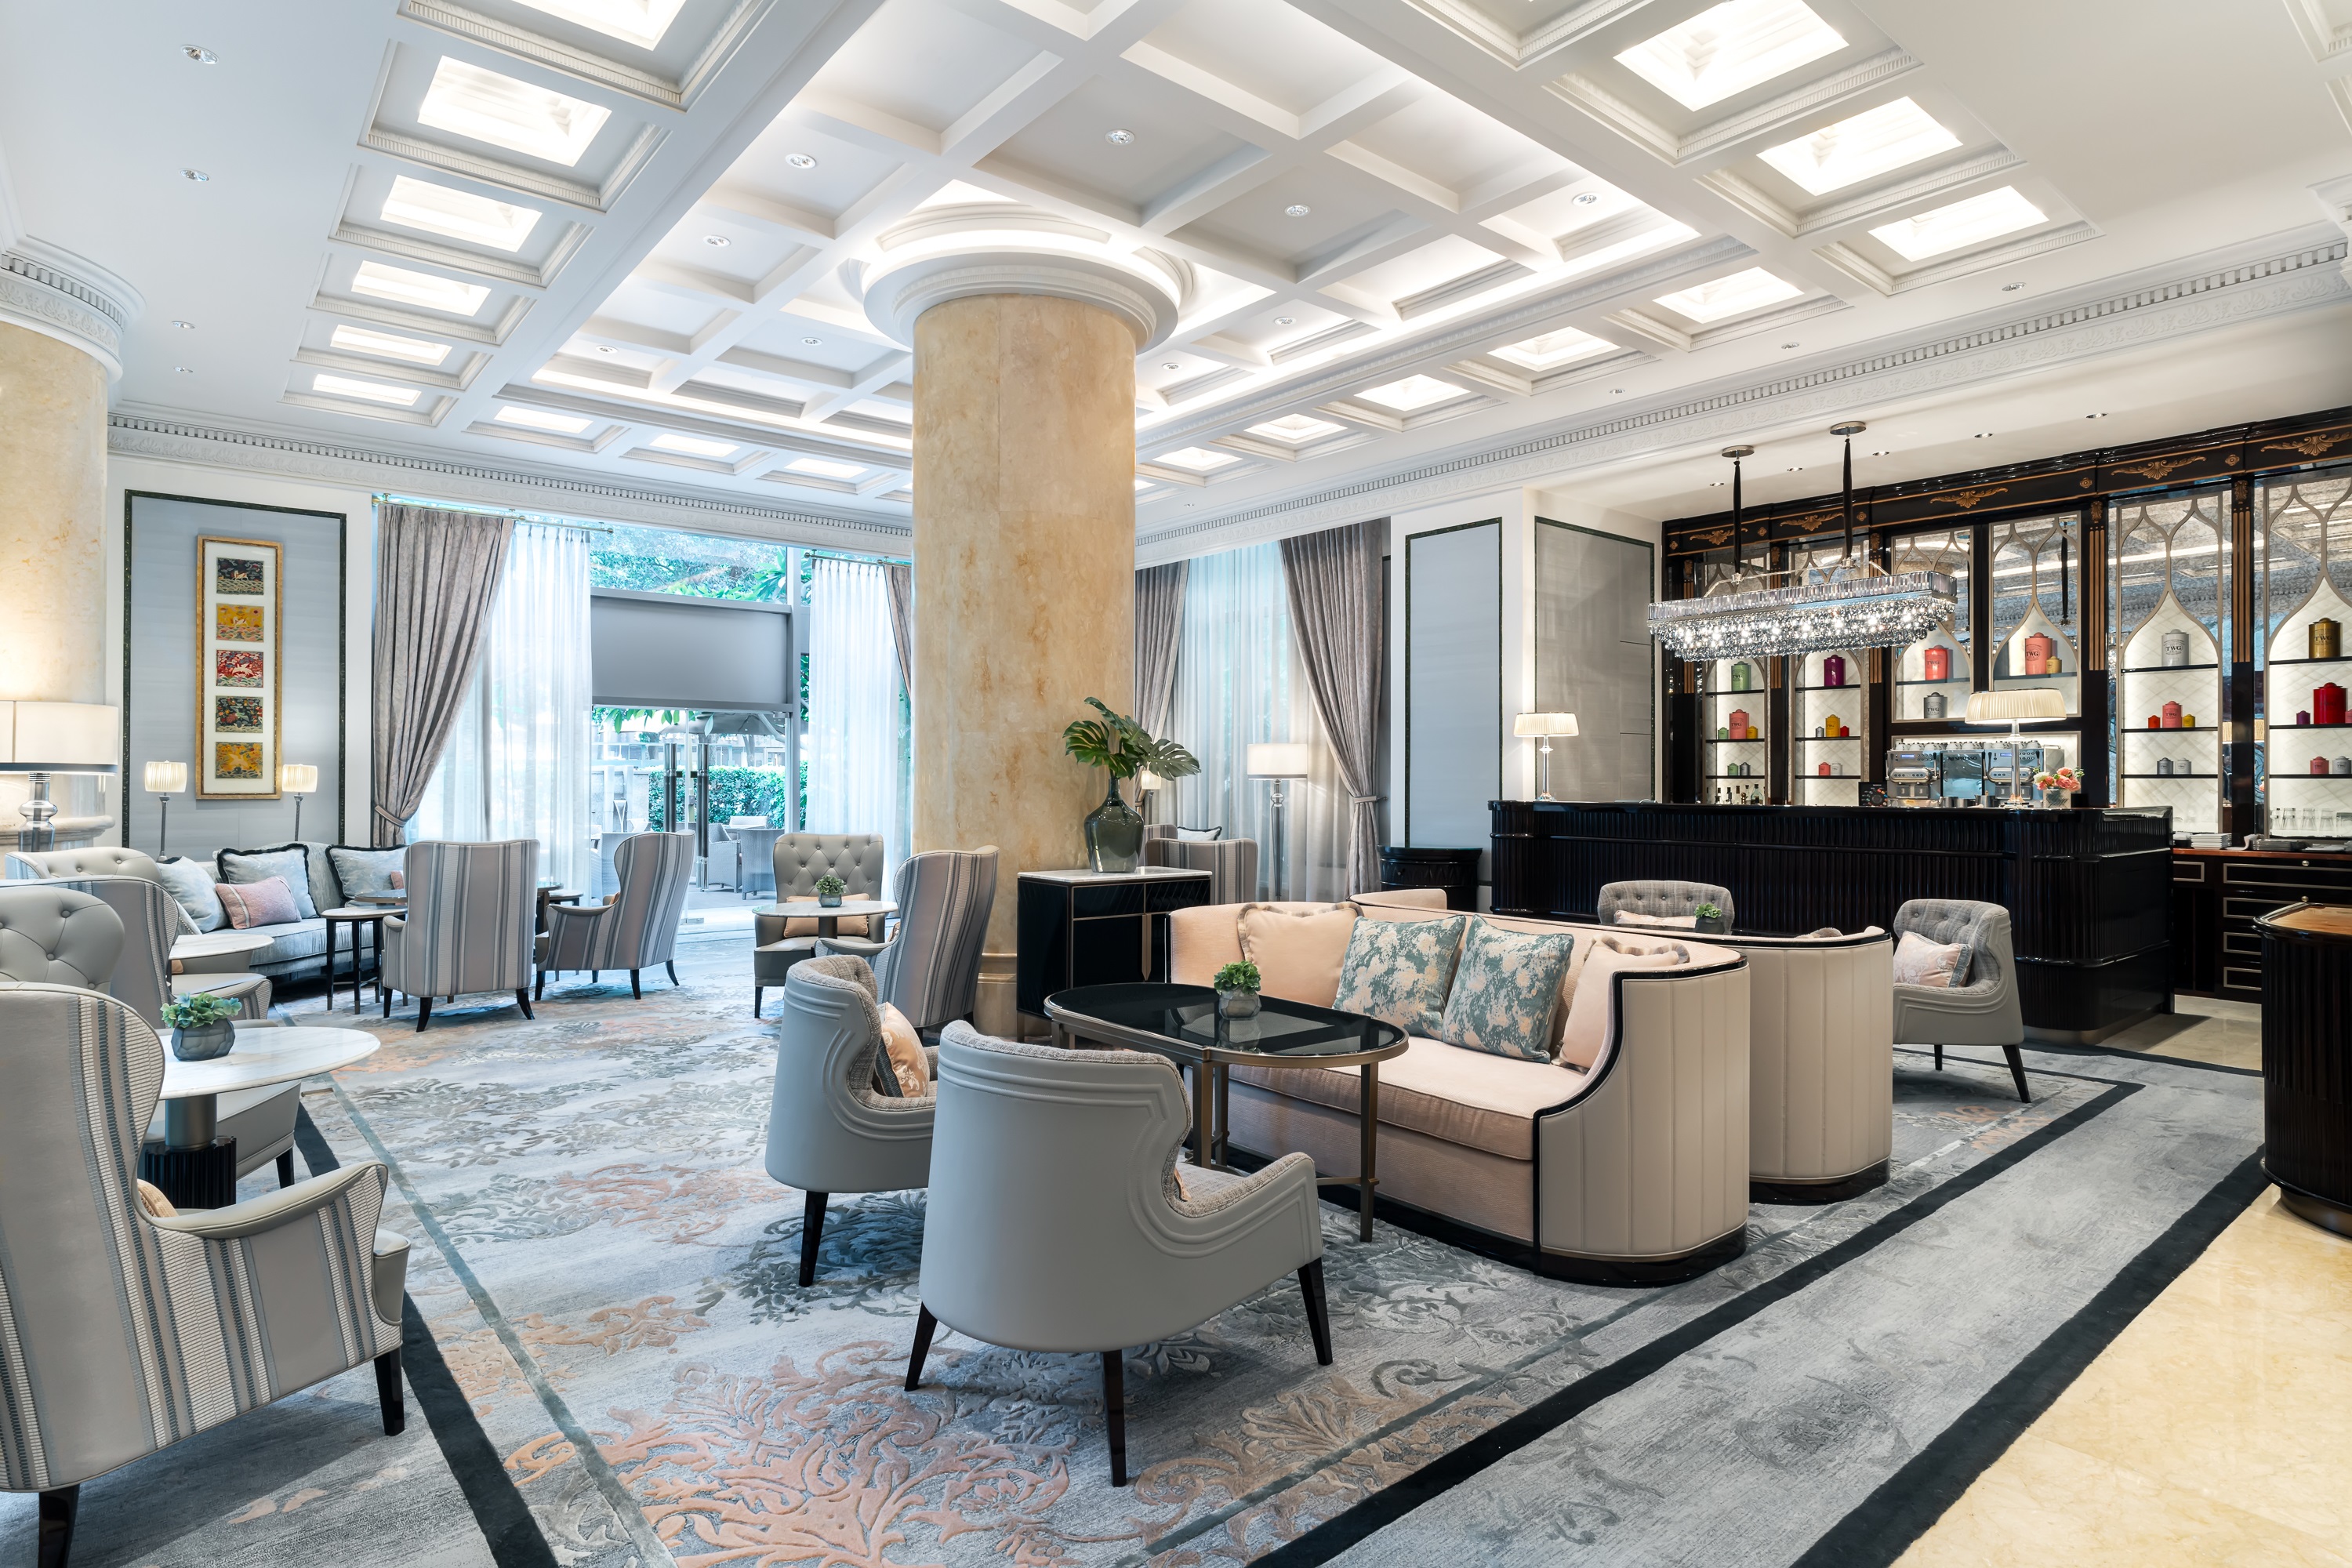 广州富力丽思卡尔顿酒店焕新升级珍珠酒廊 重新定义精致生活方式